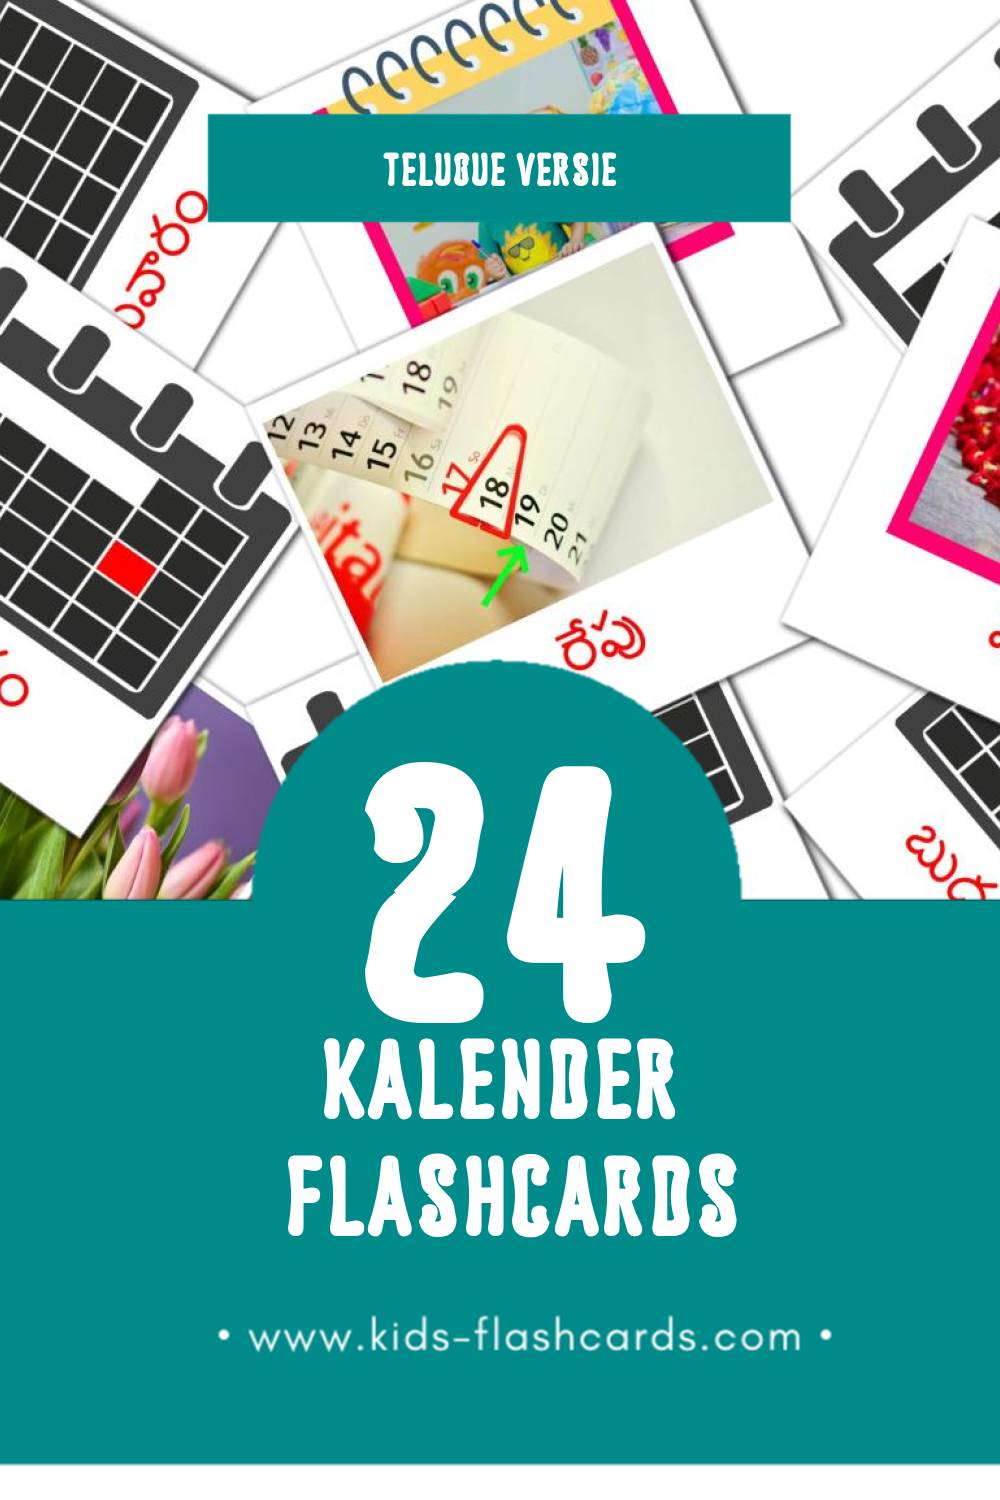 Visuele క్యాలెండర్ Flashcards voor Kleuters (24 kaarten in het Telugu)